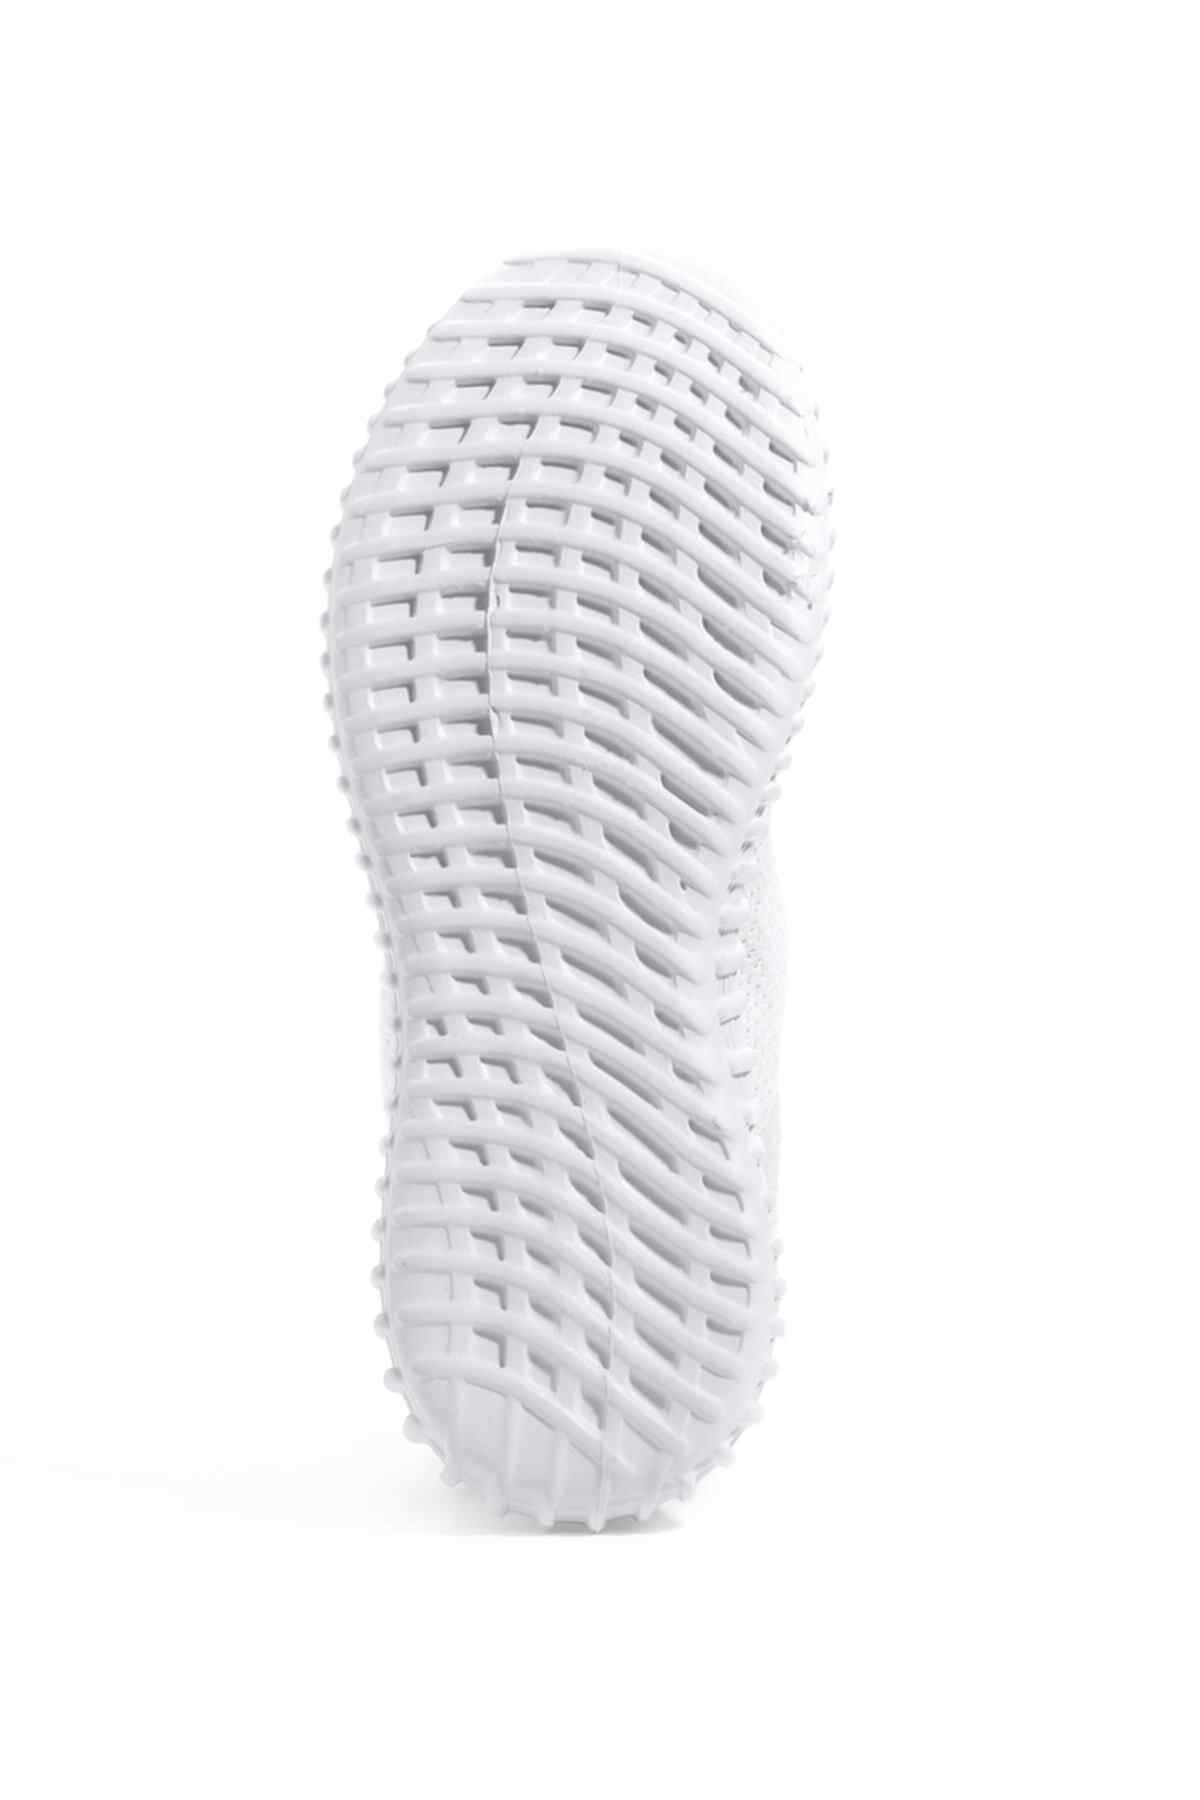 Slazenger Atomic Sneaker Kadın Ayakkabı Beyaz Pudra